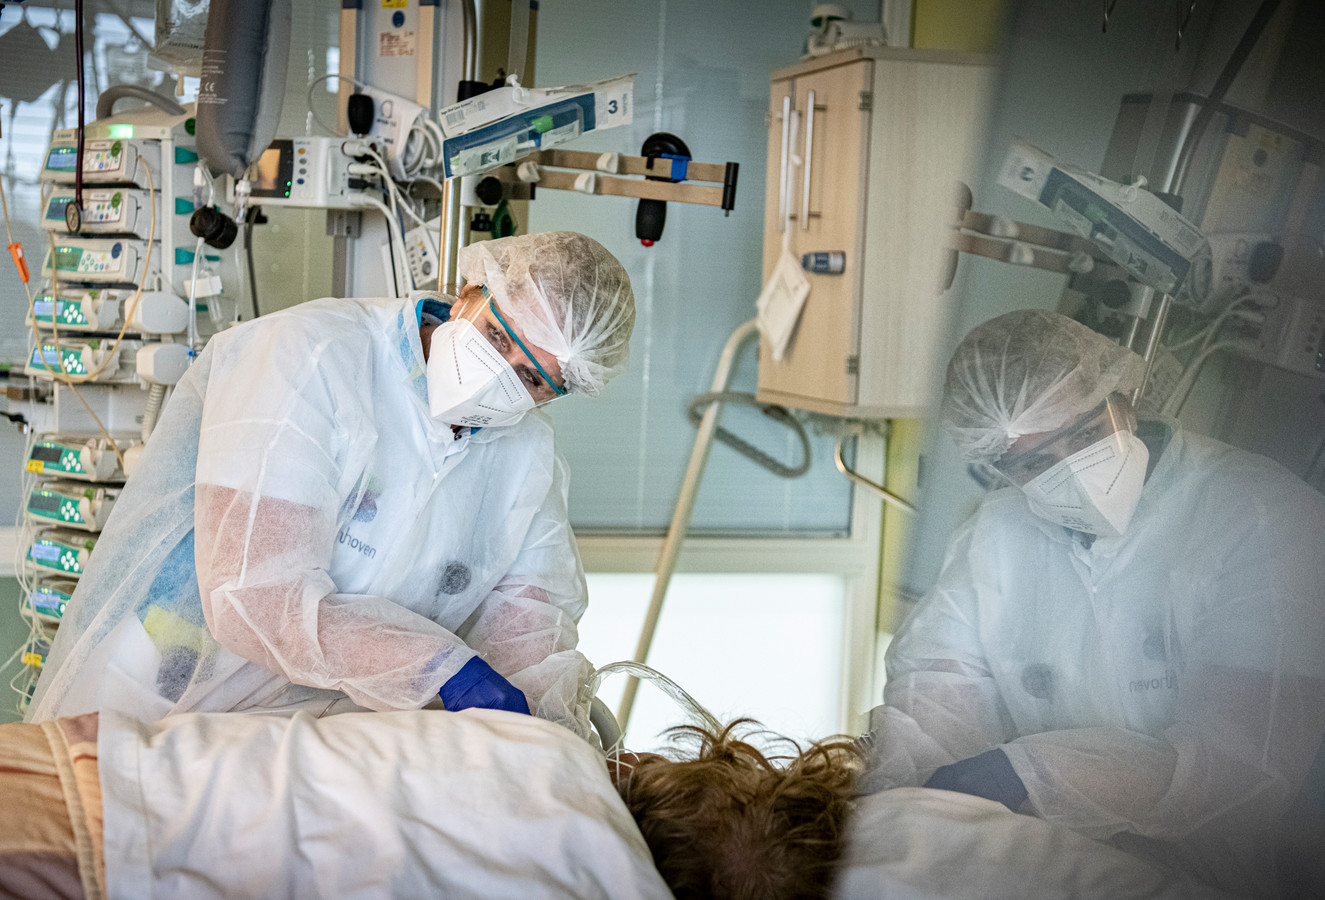 De intensive care in ziekenhuis Bernhoven.